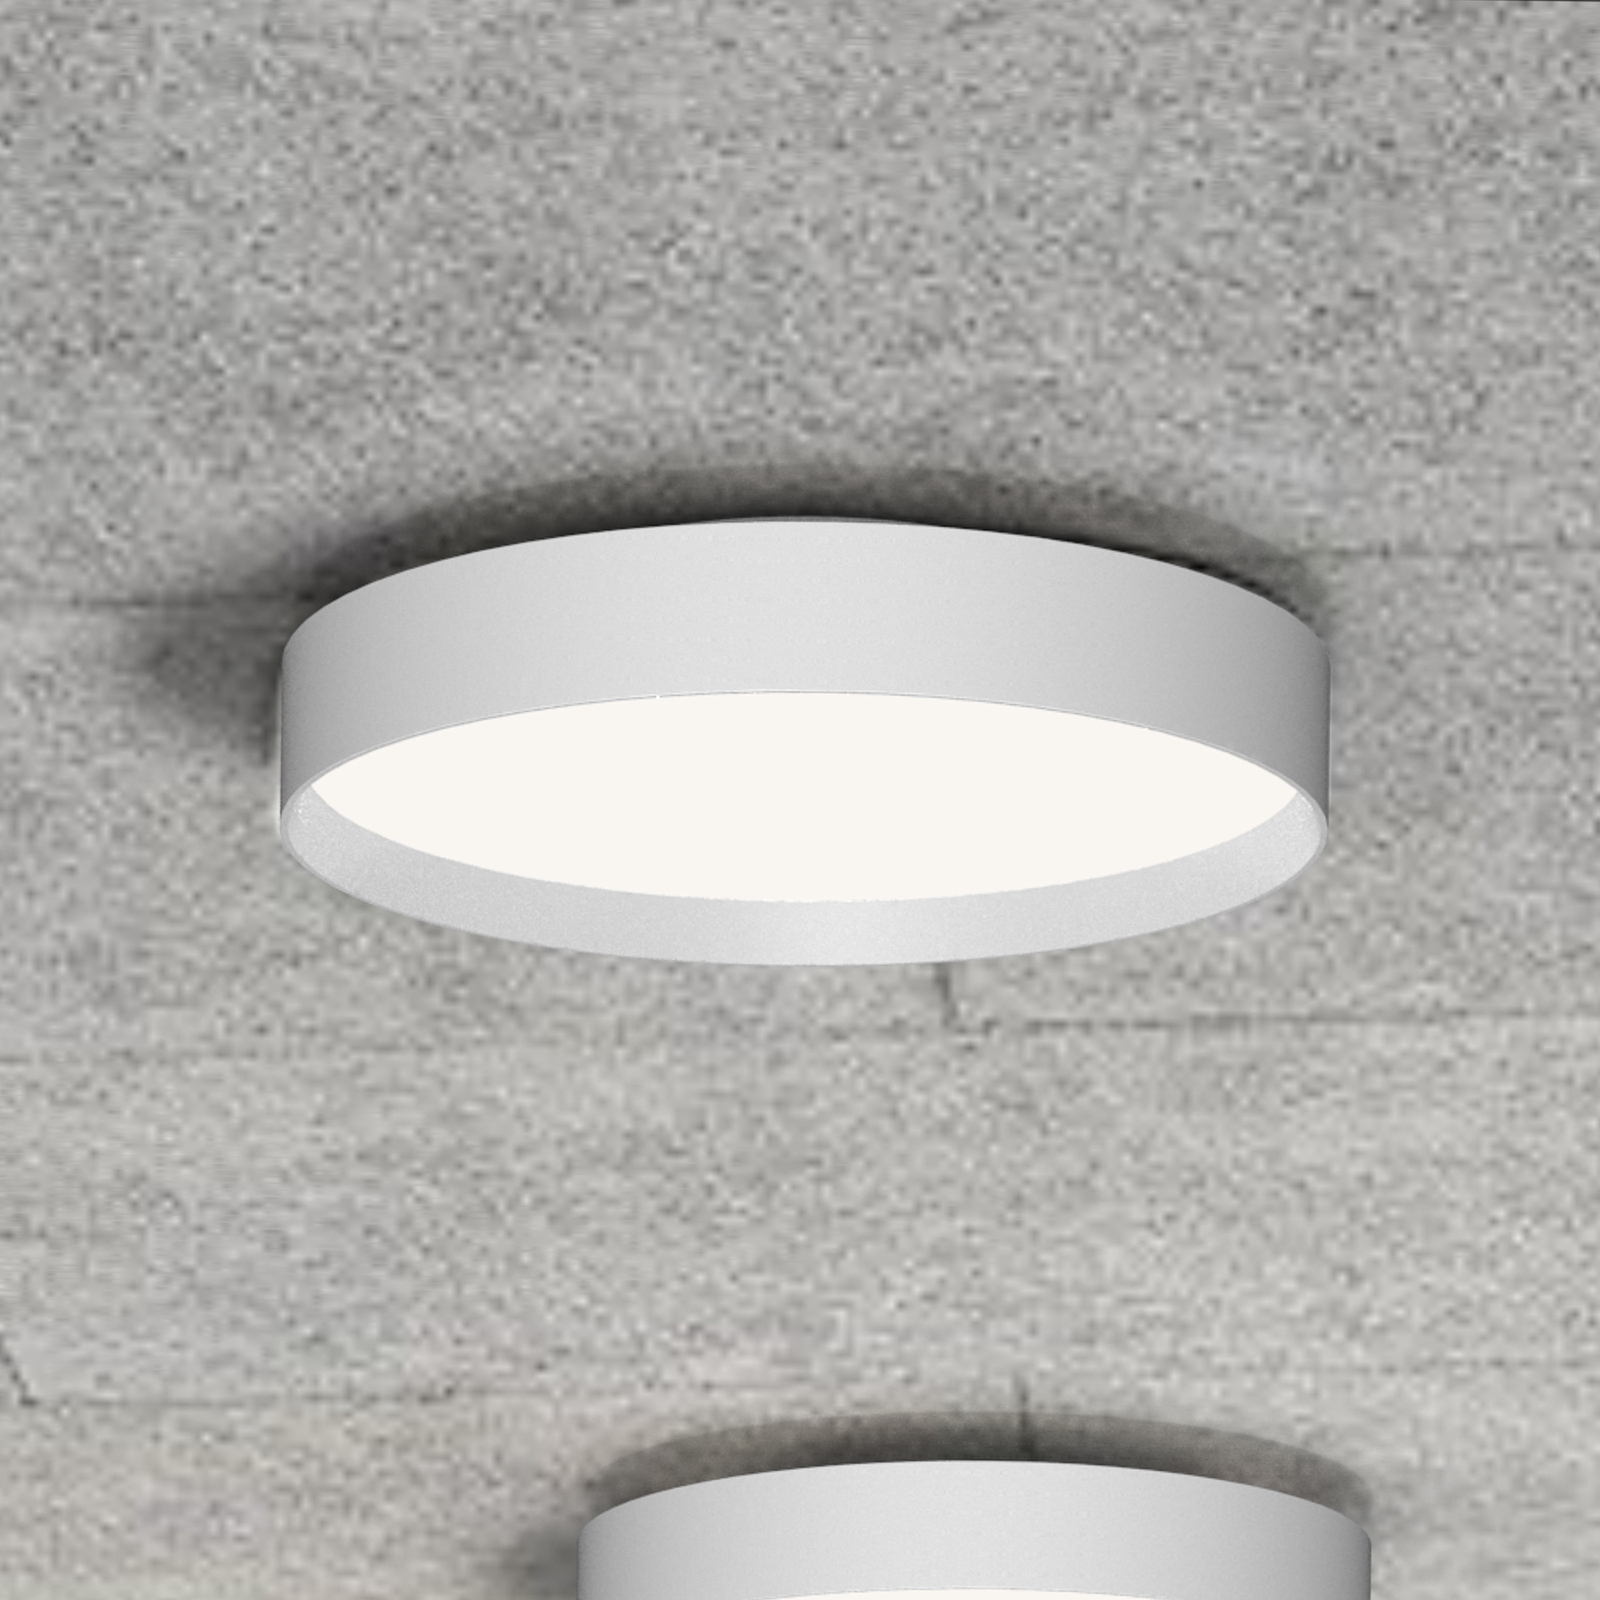 LOOM DESIGN Lucia LED ceiling light Ø45cm white